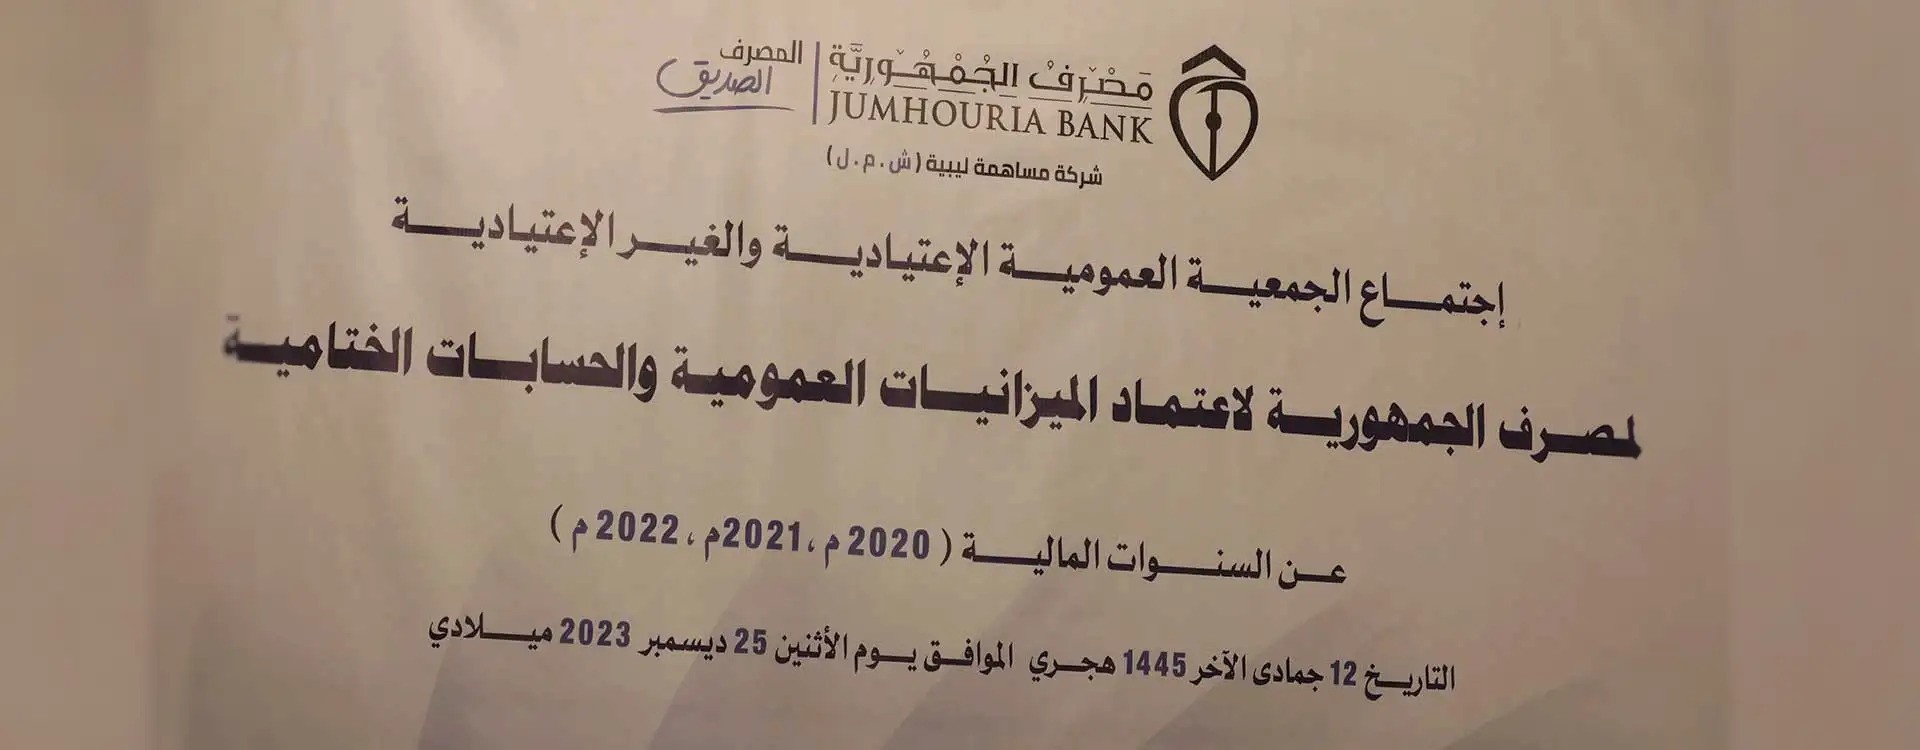 مصرف الجمهورية يعقد جمعيته العمومية للعام 2023.